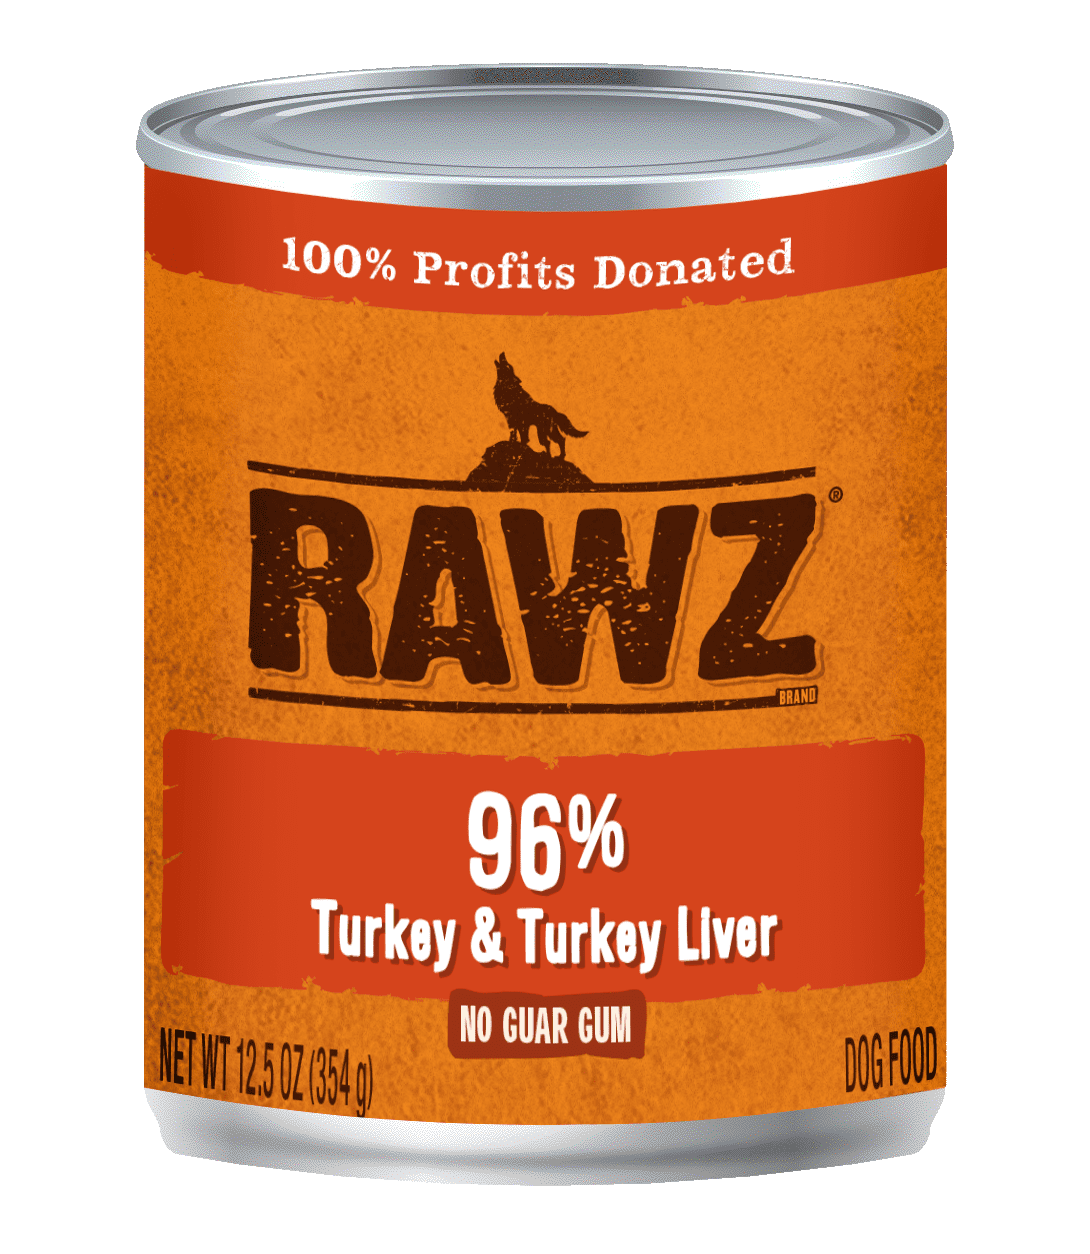 RAWZ 96% Turkey & Turkey Liver Pâté Canned Dog Food